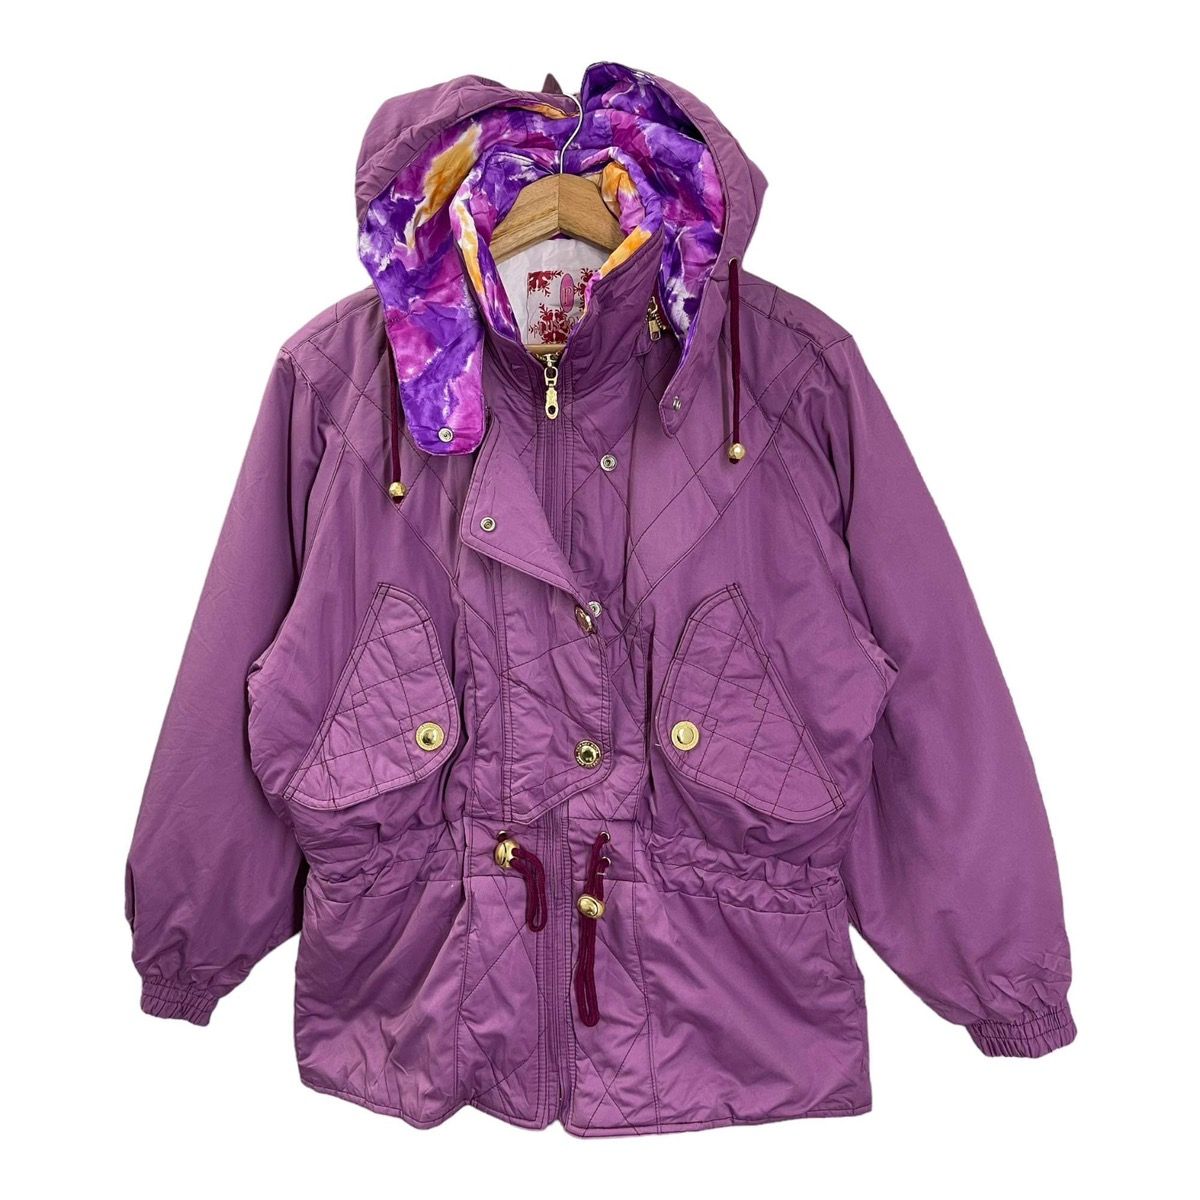 Vintage - LADIES💥 Plus Joy Ful Hoodies Ski Jacket Size M - 3